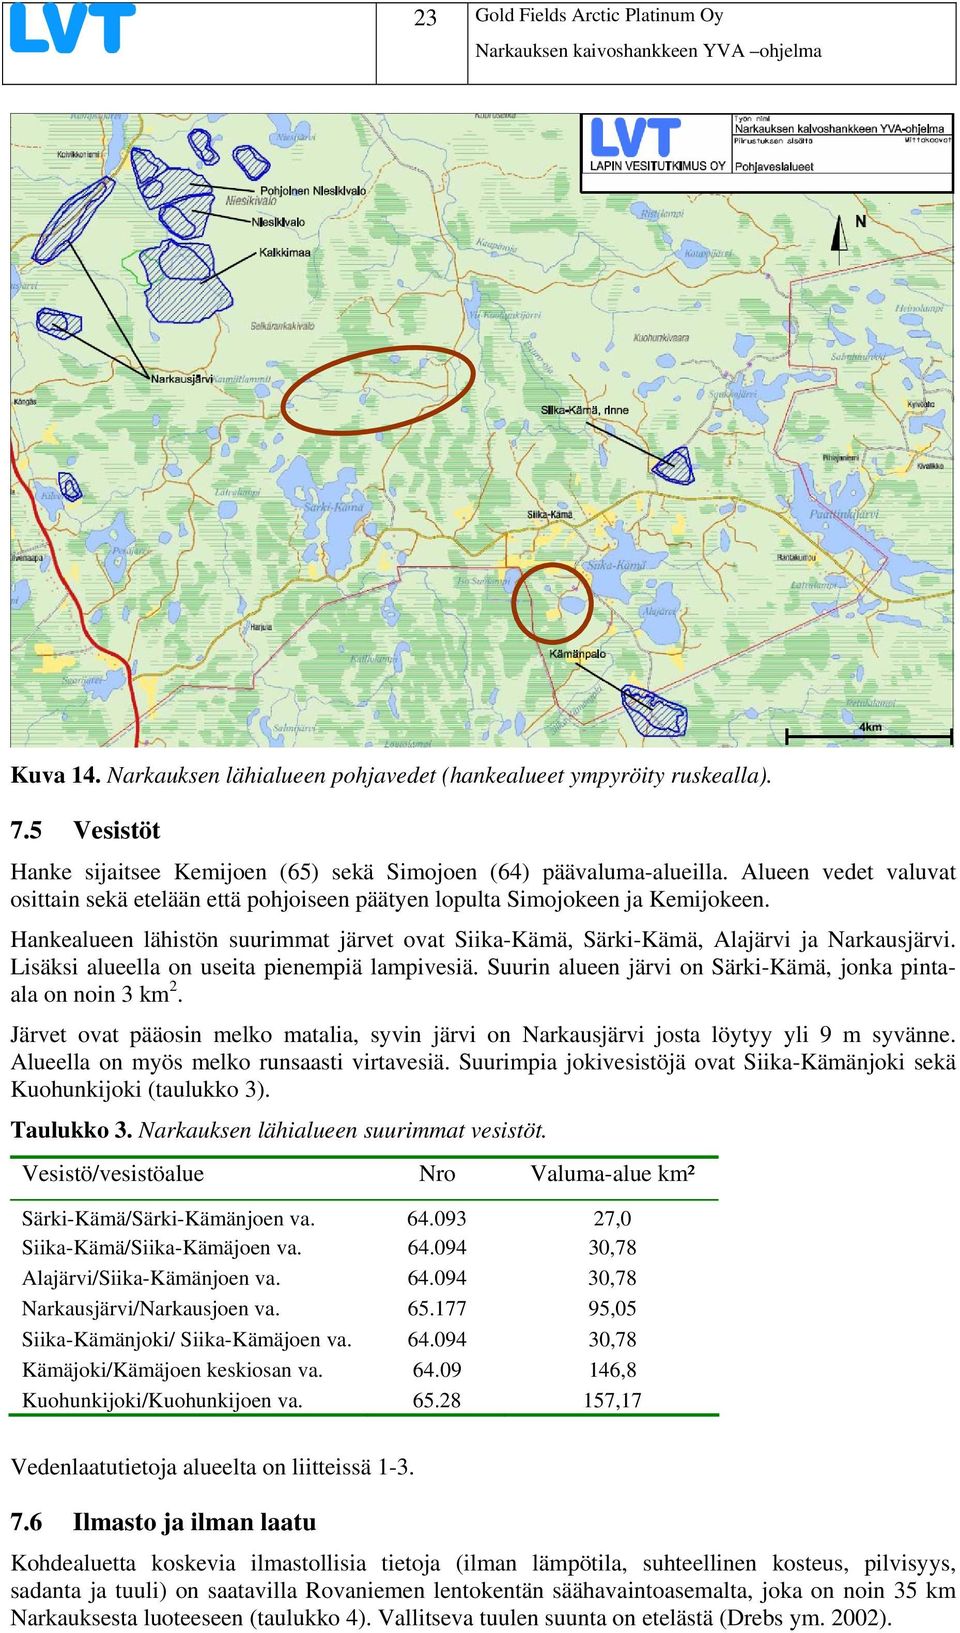 Lisäksi alueella on useita pienempiä lampivesiä. Suurin alueen järvi on Särki-Kämä, jonka pintaala on noin 3 km2.